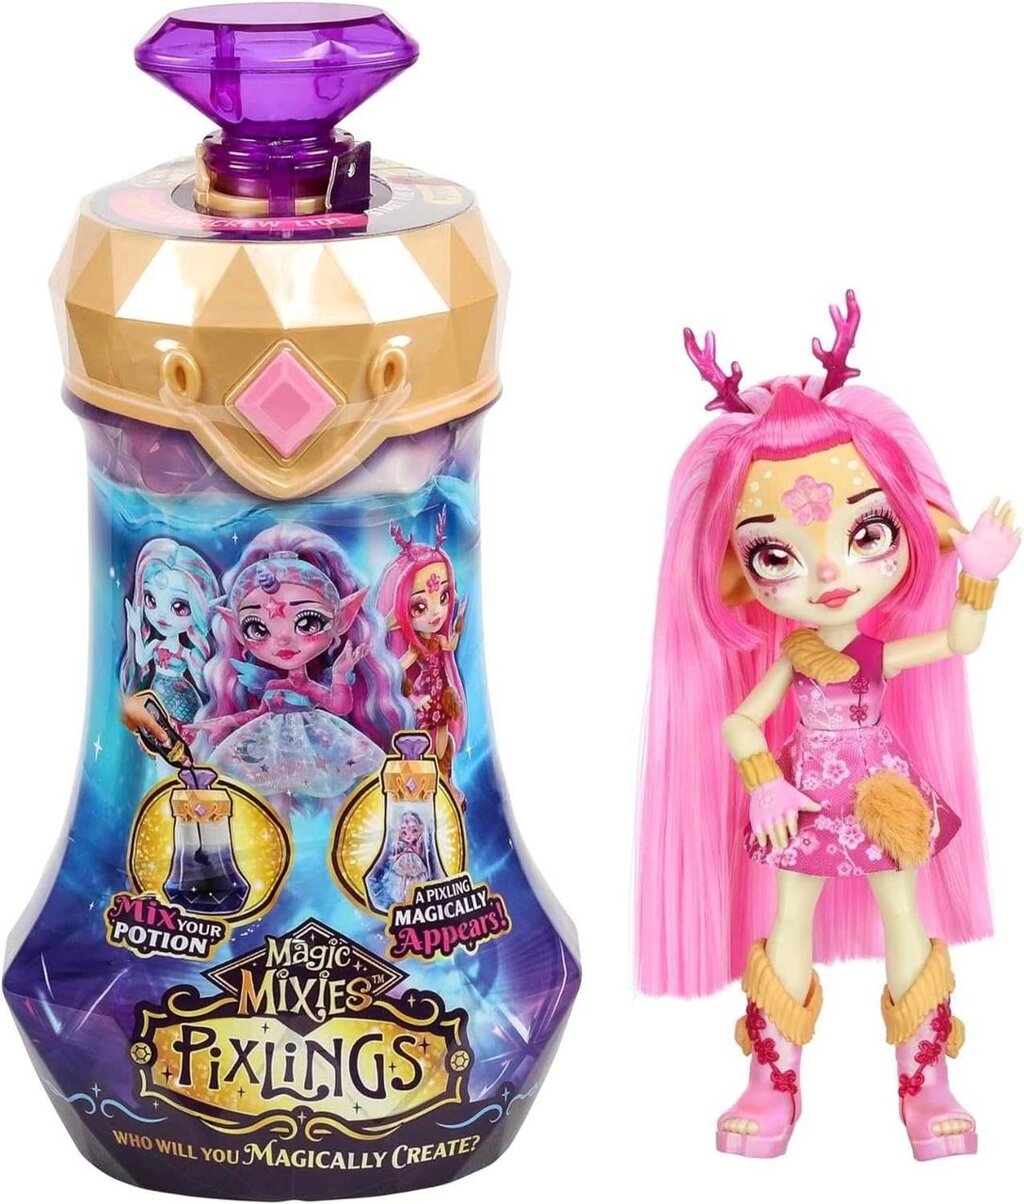 Лялька-сюрприз Magic Mixies Pixlings Deerlee, Пікслінг олень рожева від компанії K V I T K A - фото 1